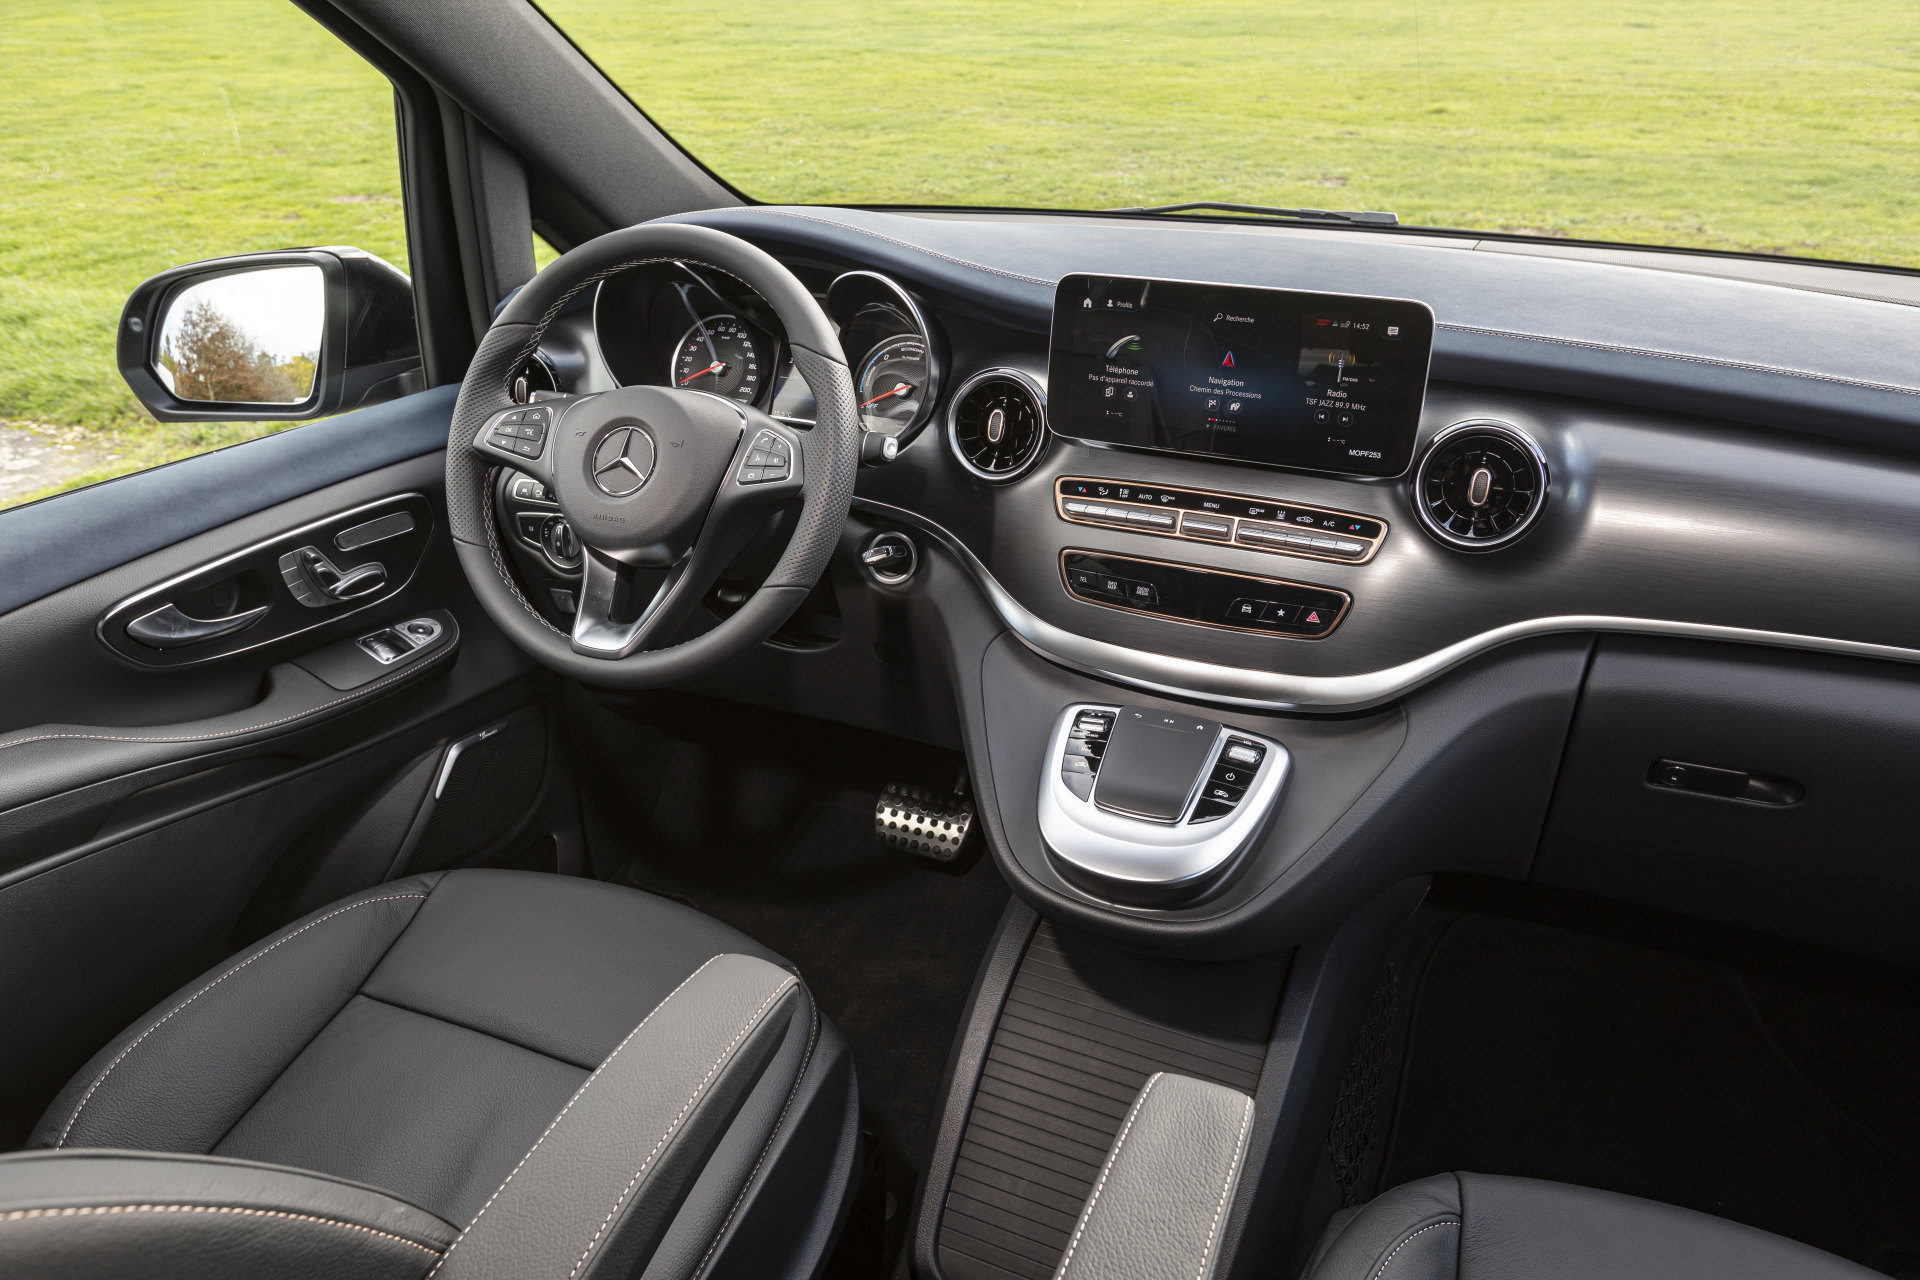 Mercedes-Benz Viano interior - Cockpit